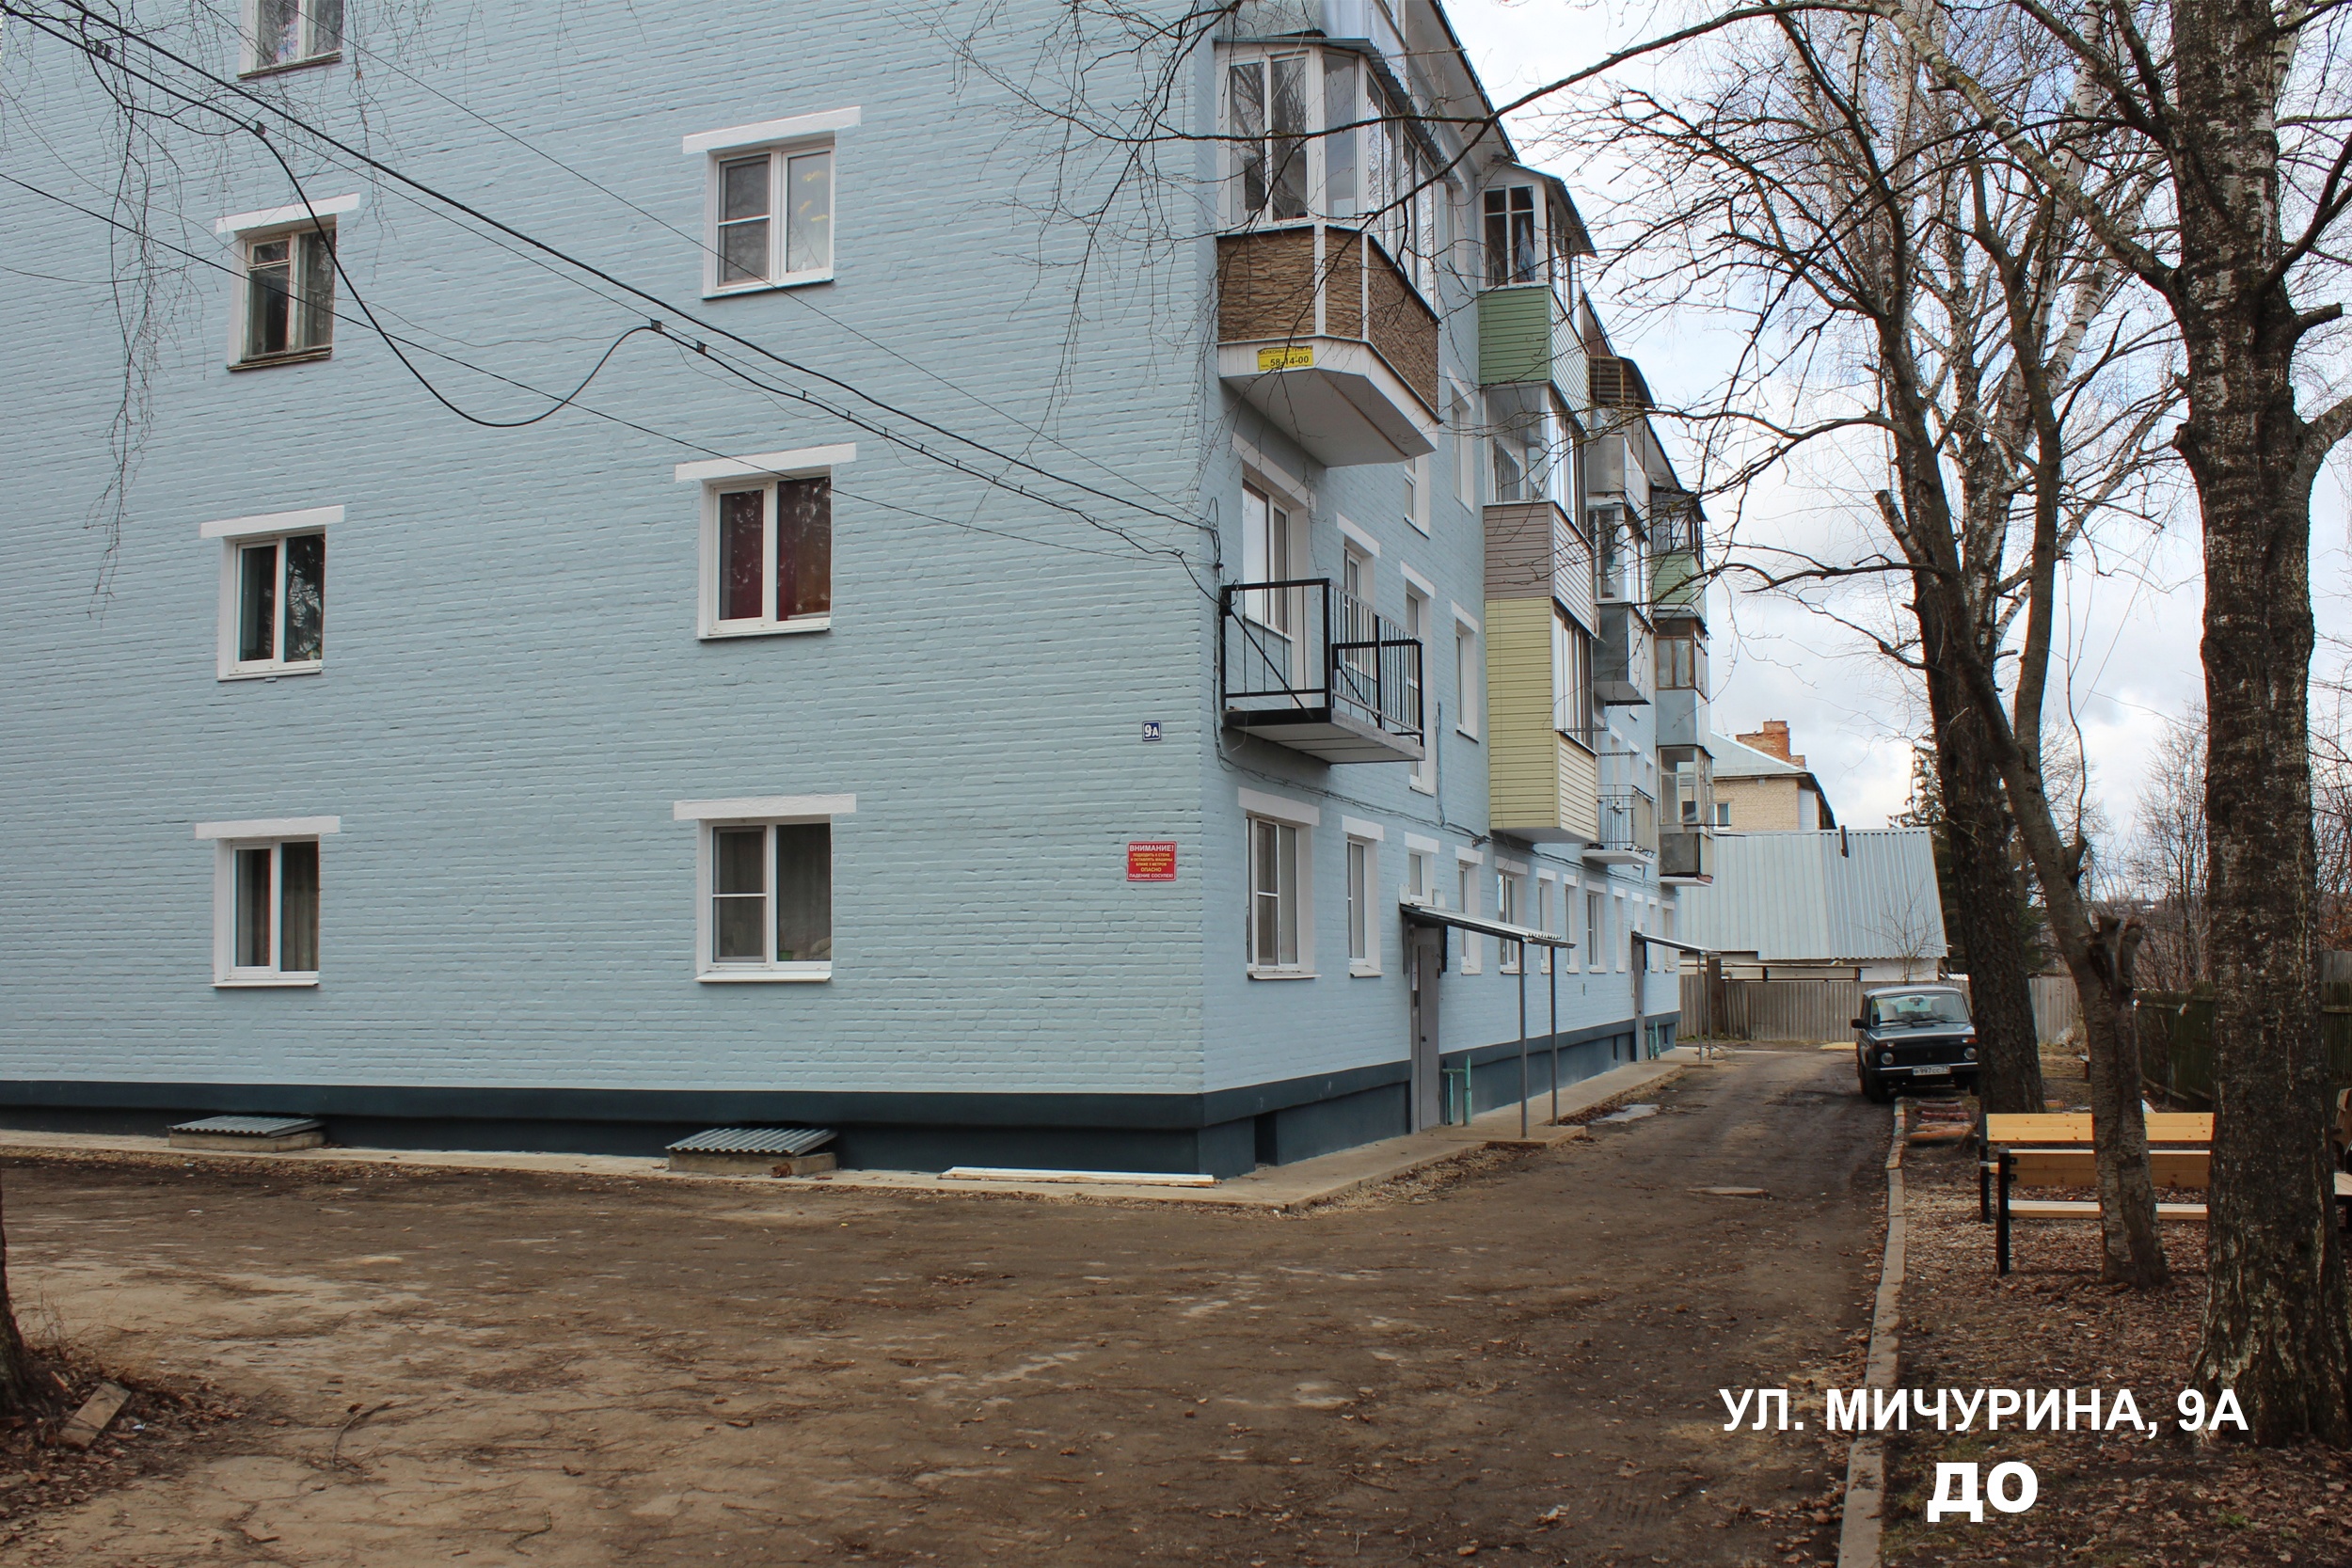 38 дворов в Плавском районе благоустроены по проекту «ФКГС».